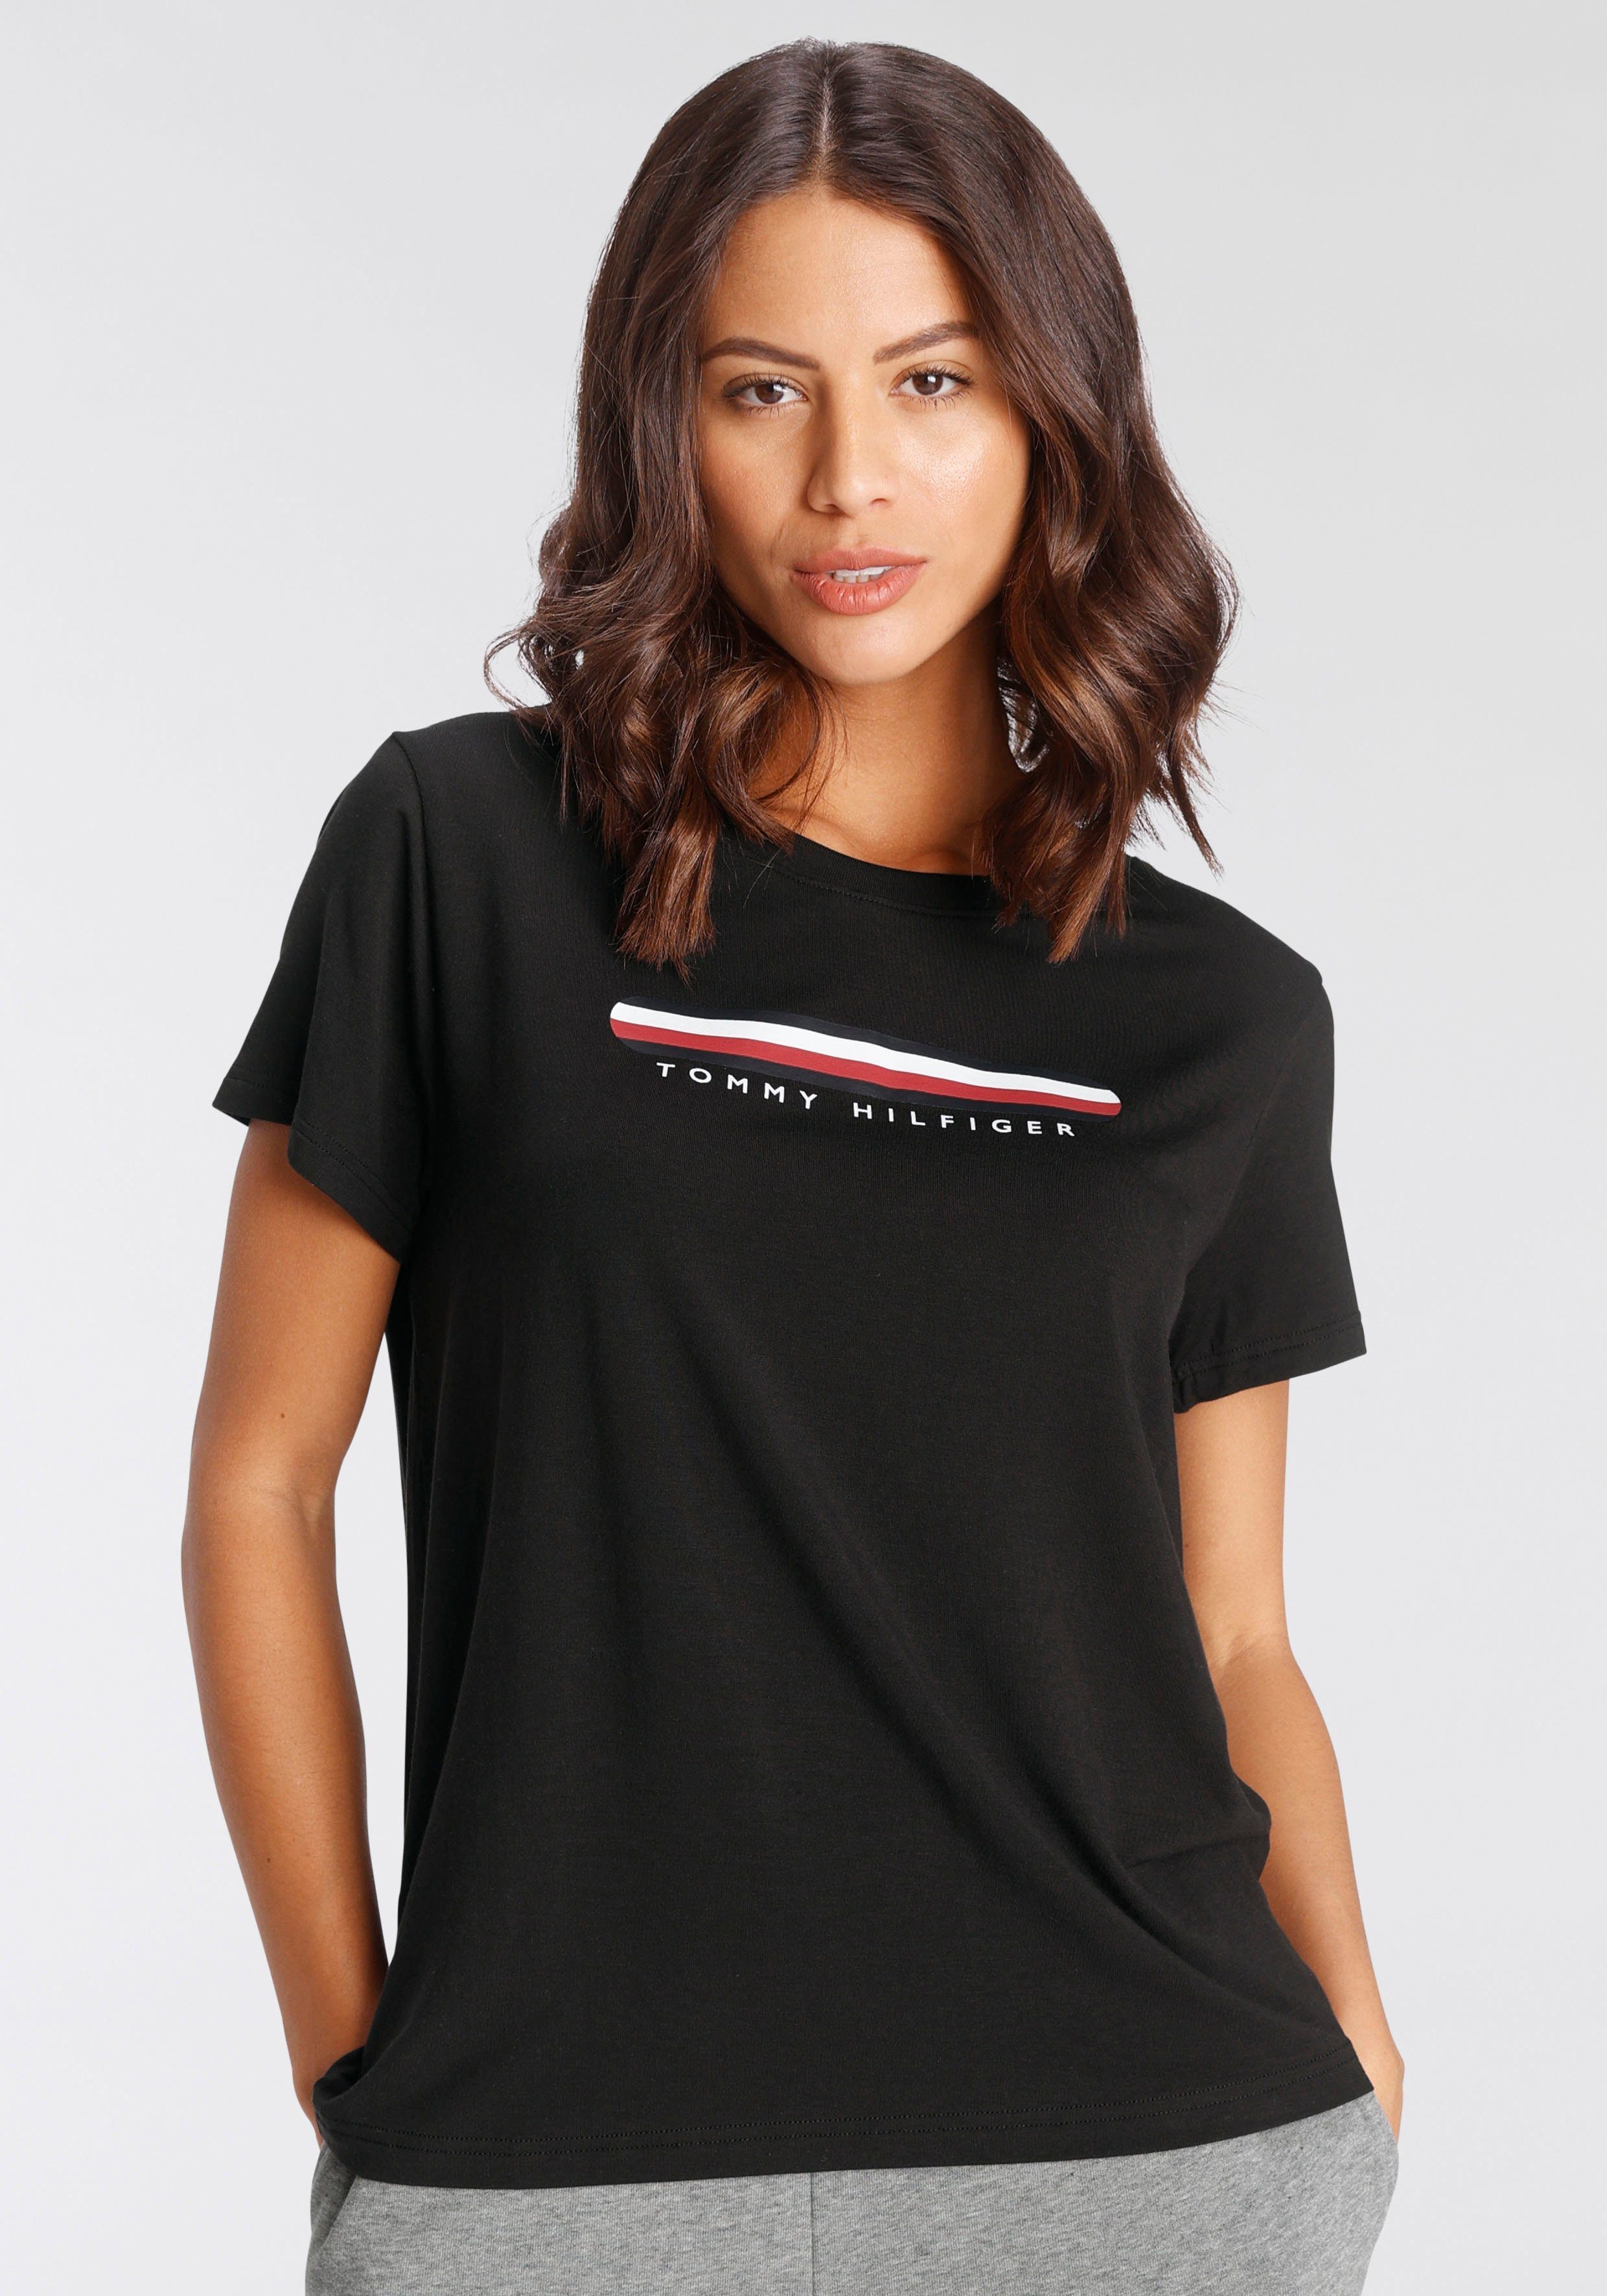 Tommy Hilfiger T-Shirts online kaufen | OTTO